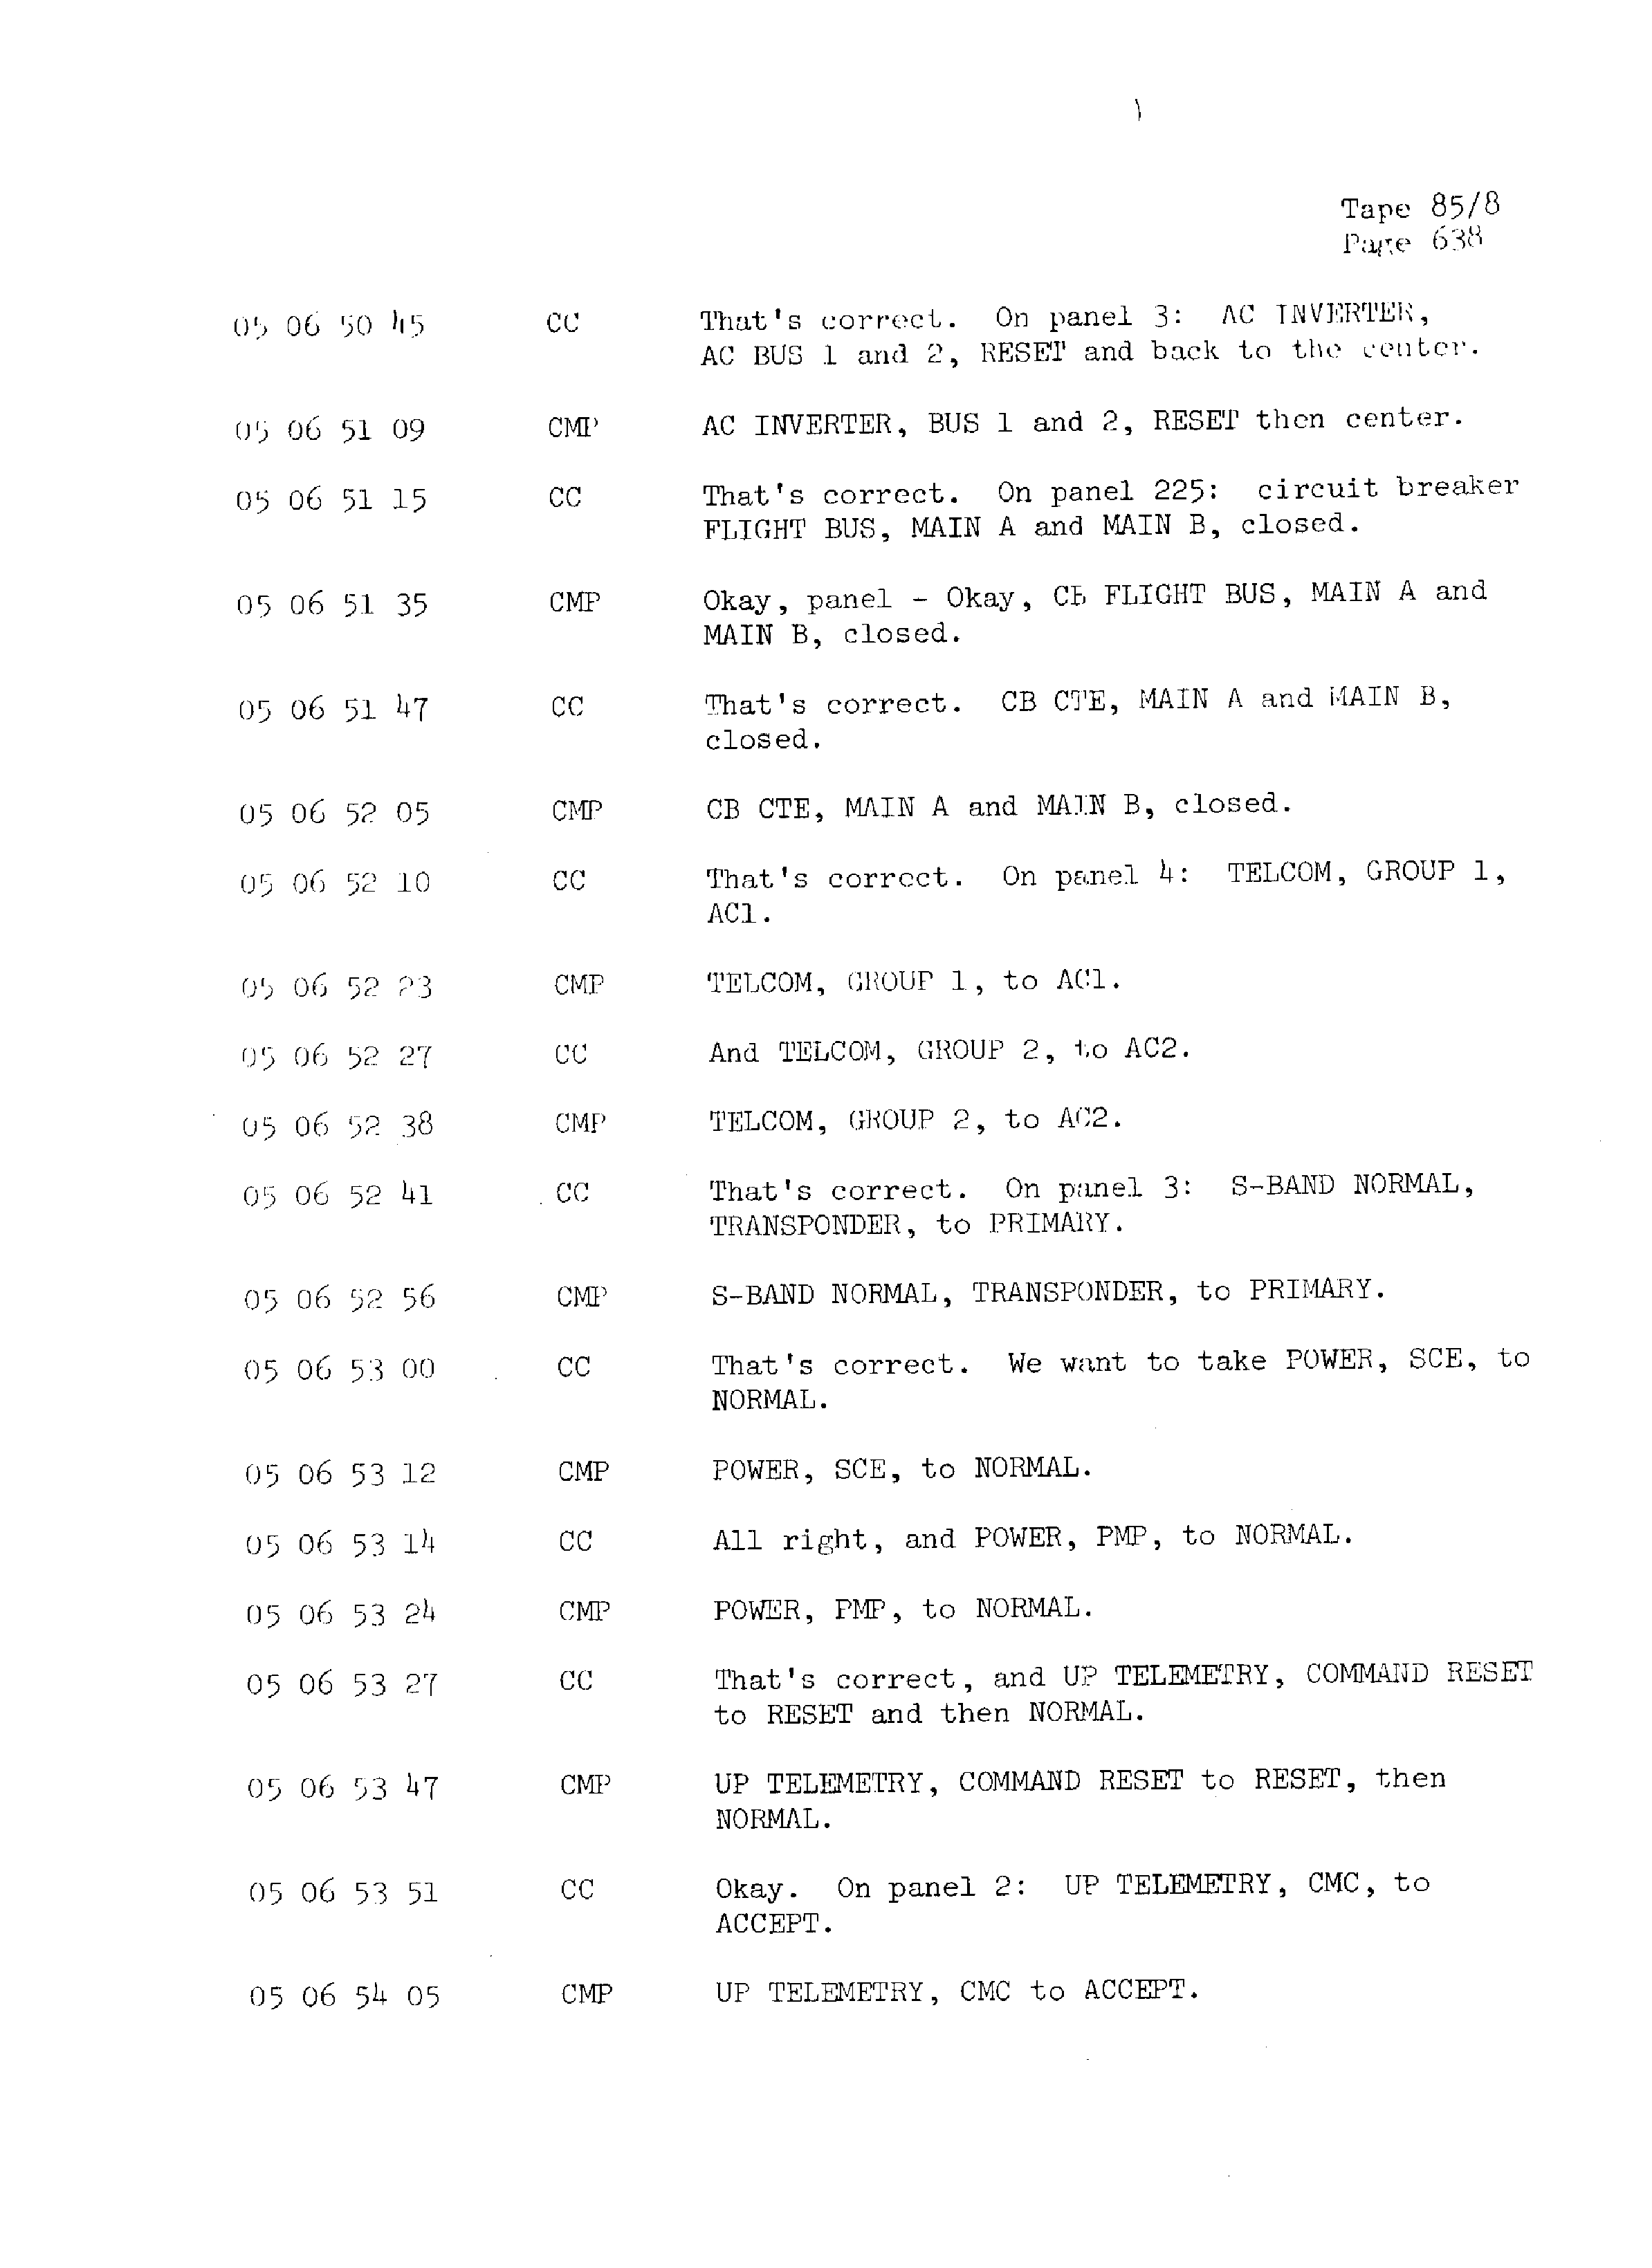 Page 645 of Apollo 13’s original transcript